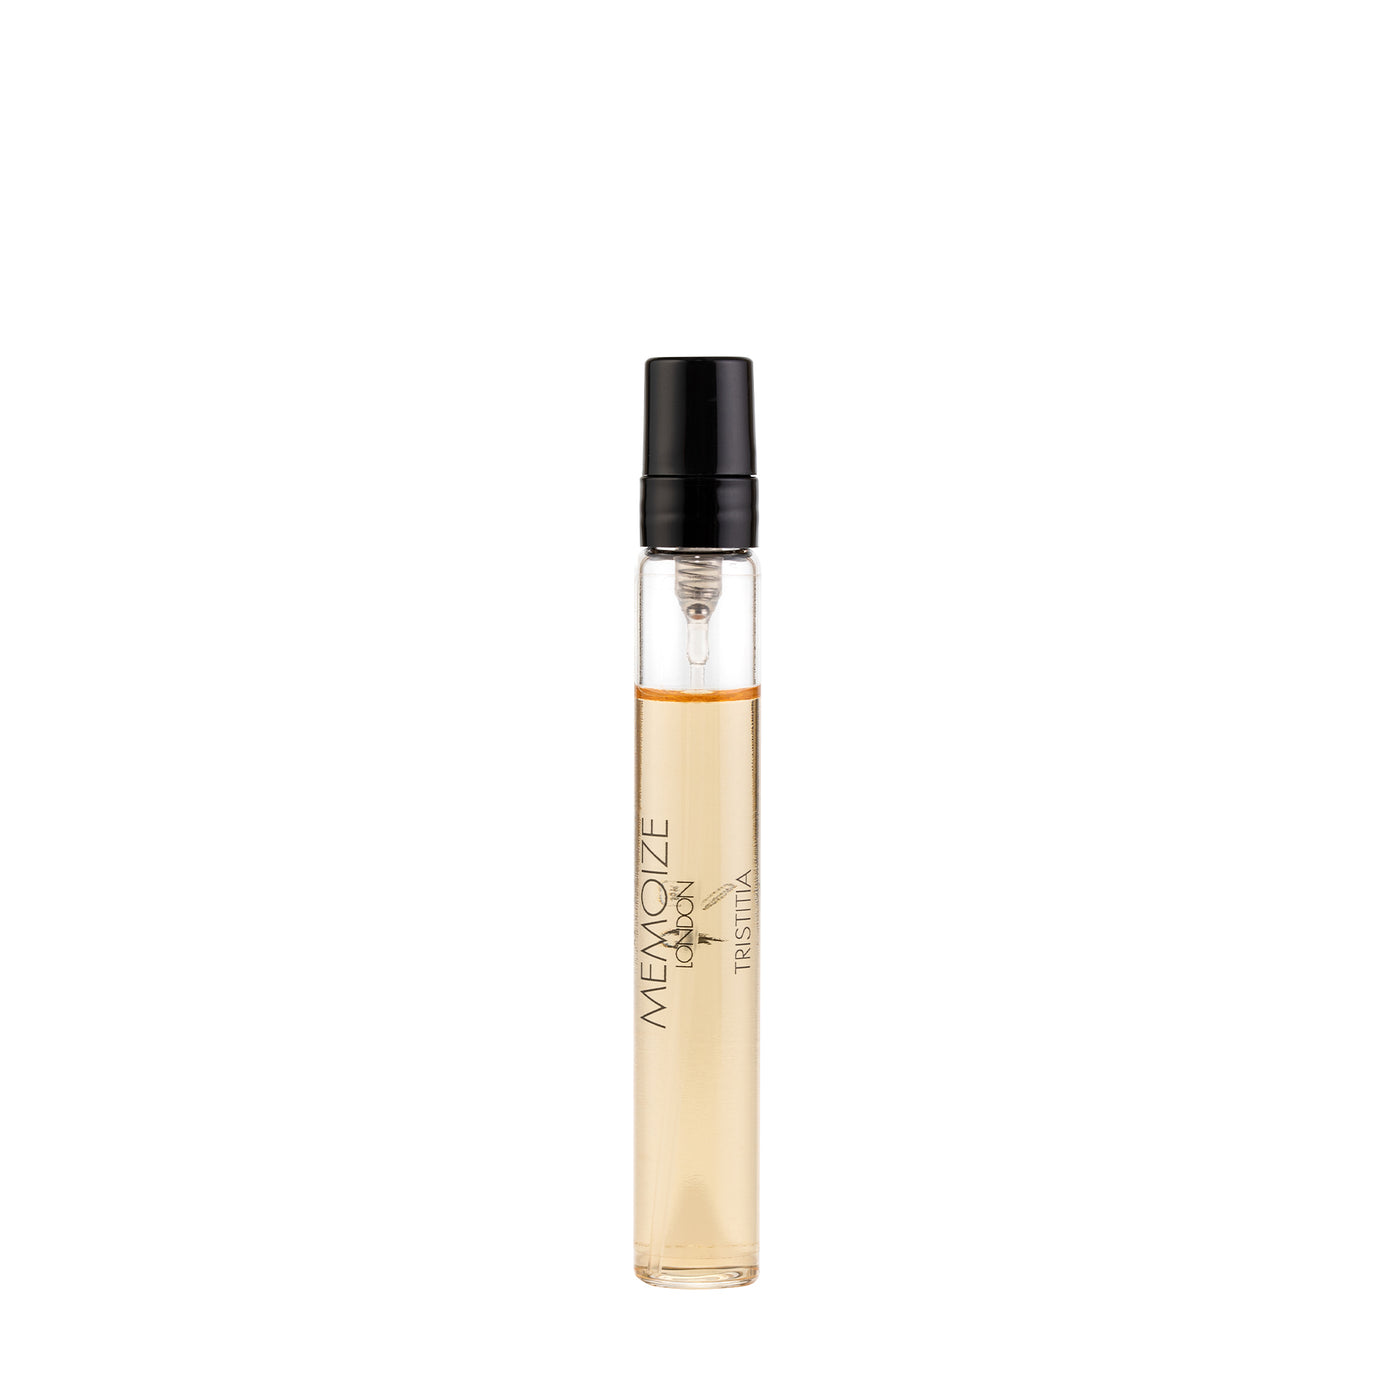 Memoize London TRISTITIA Extait de Parfum 7.5ml